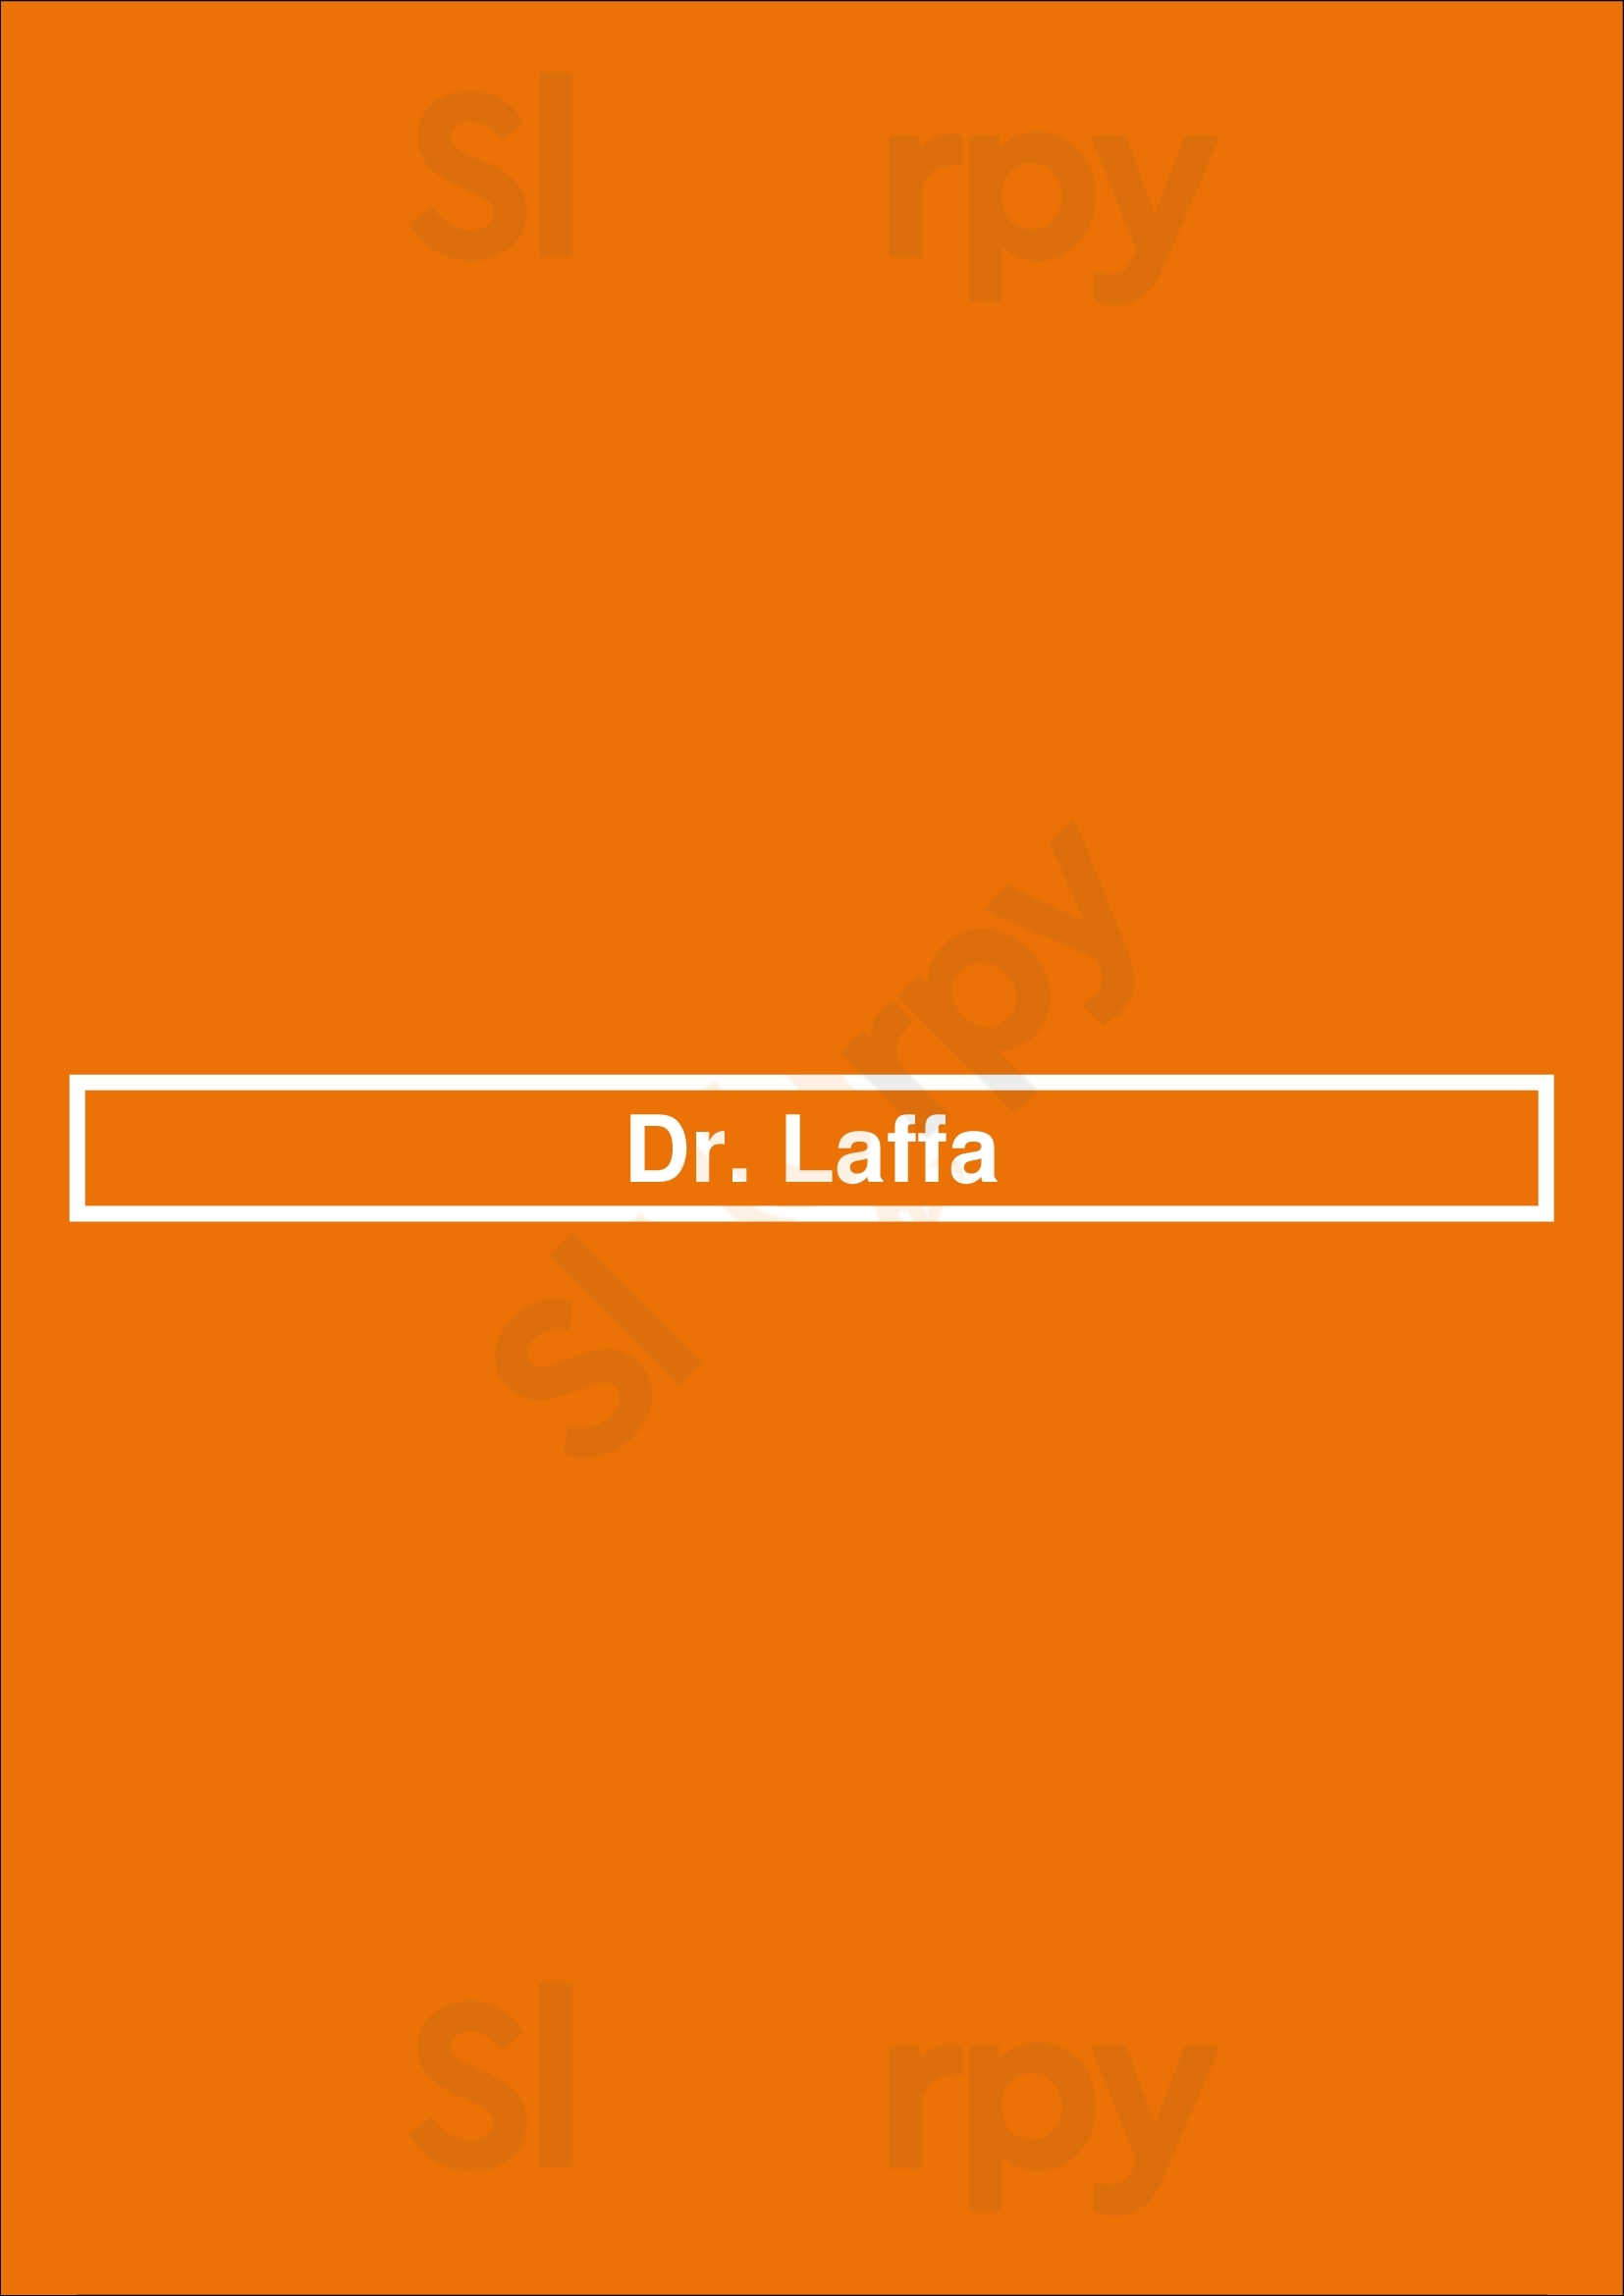 Dr. Laffa Toronto Menu - 1